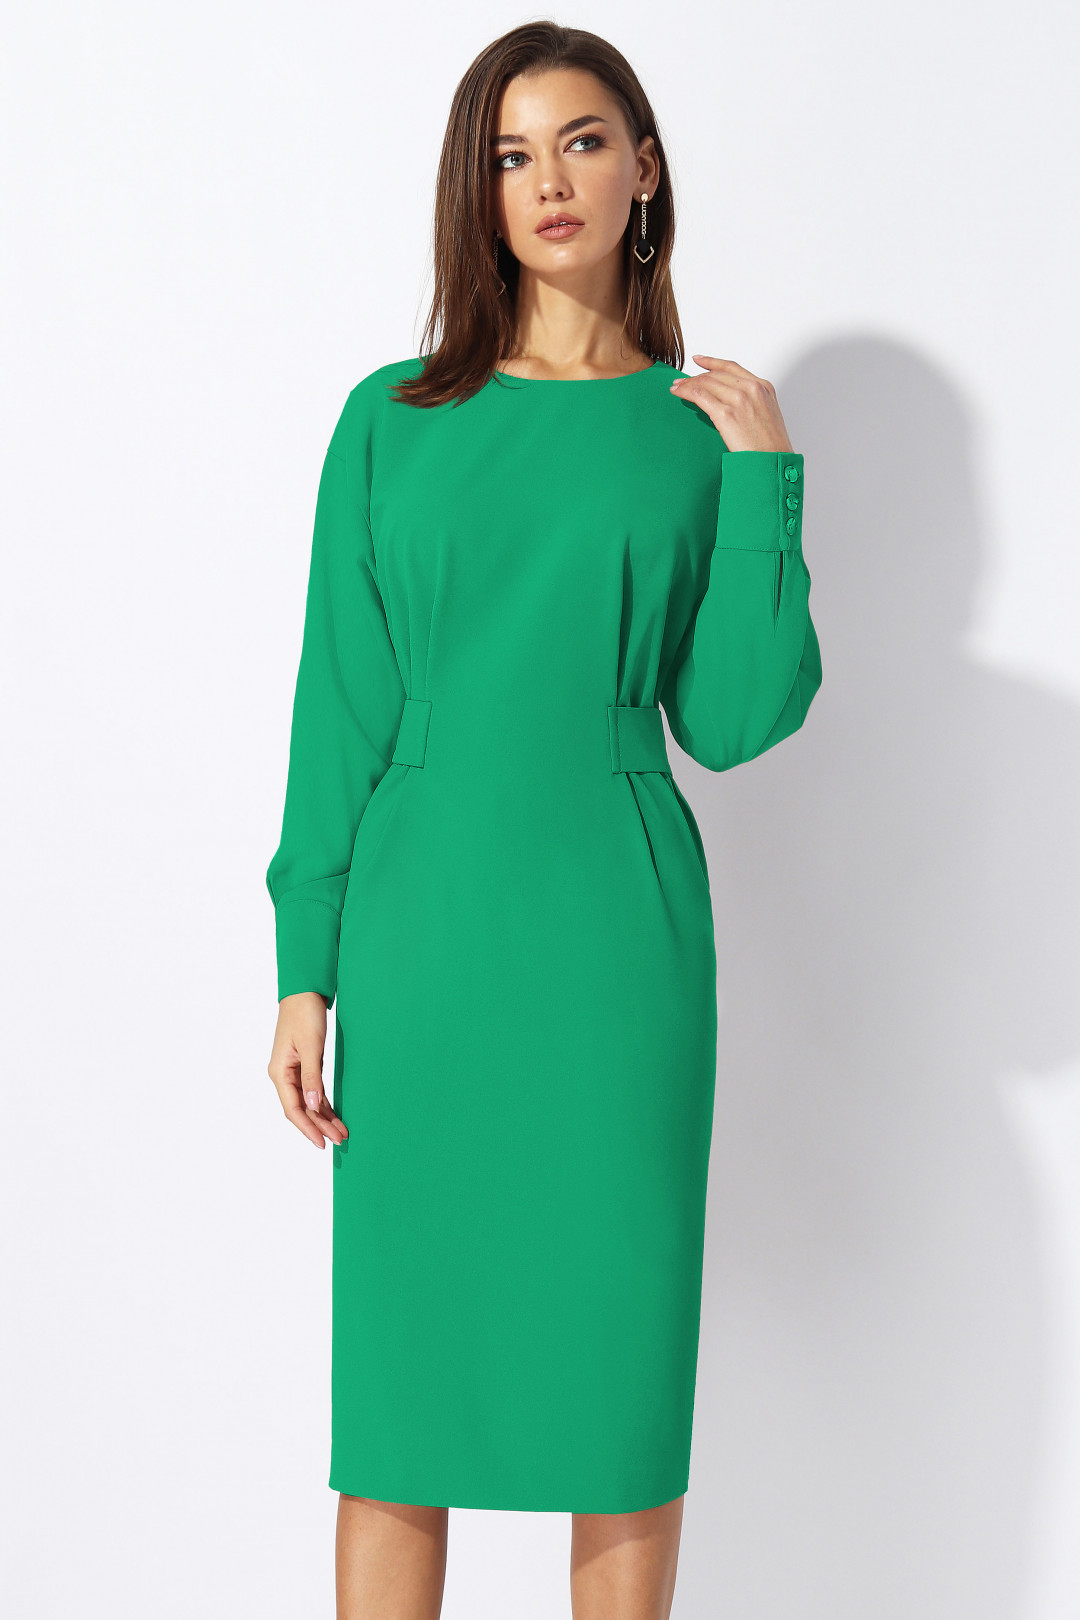 Платье МиА-Мода 1197-5 зеленый